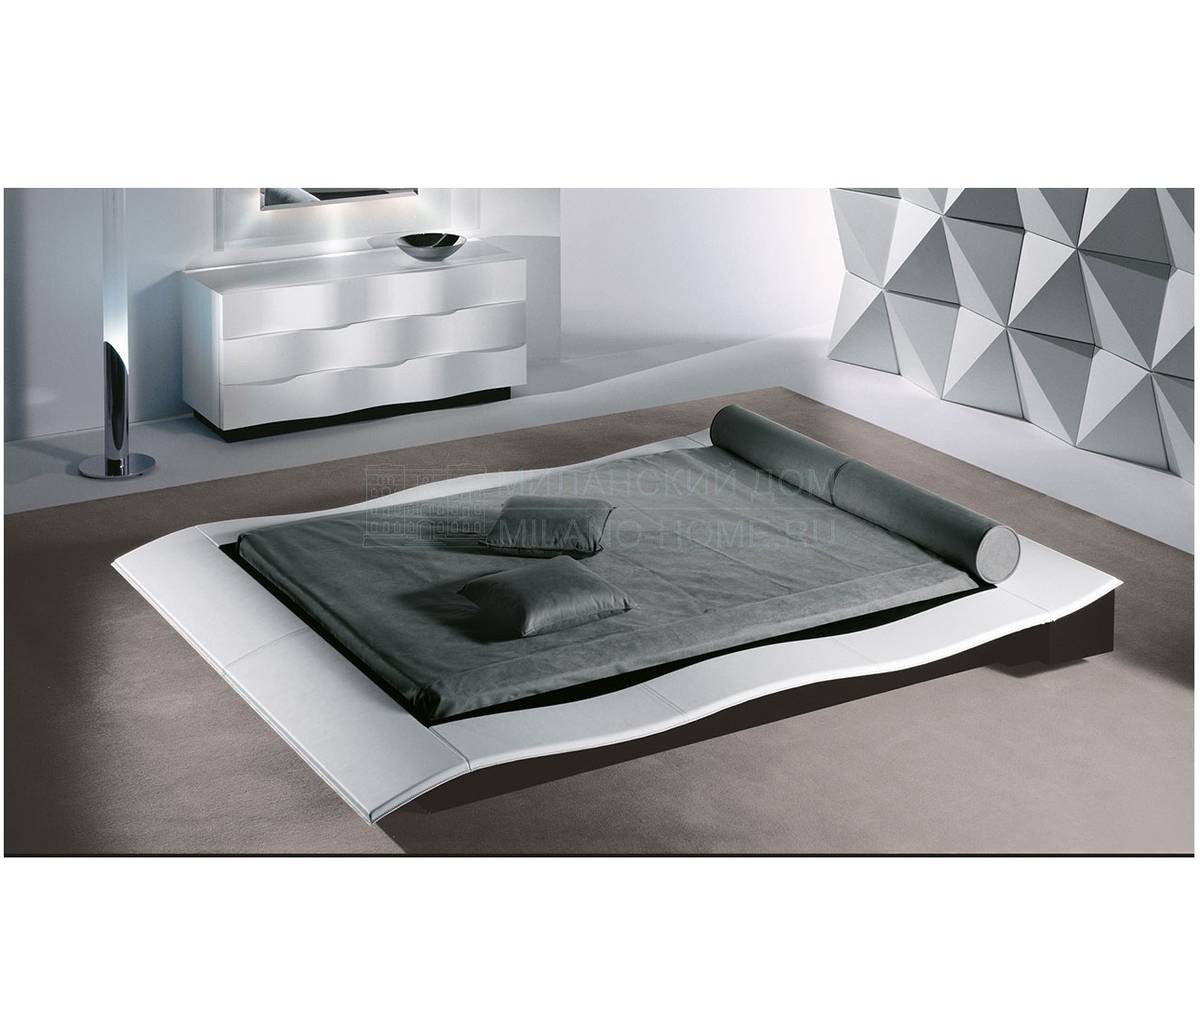 Кожаная кровать Onda letto из Италии фабрики REFLEX ANGELO